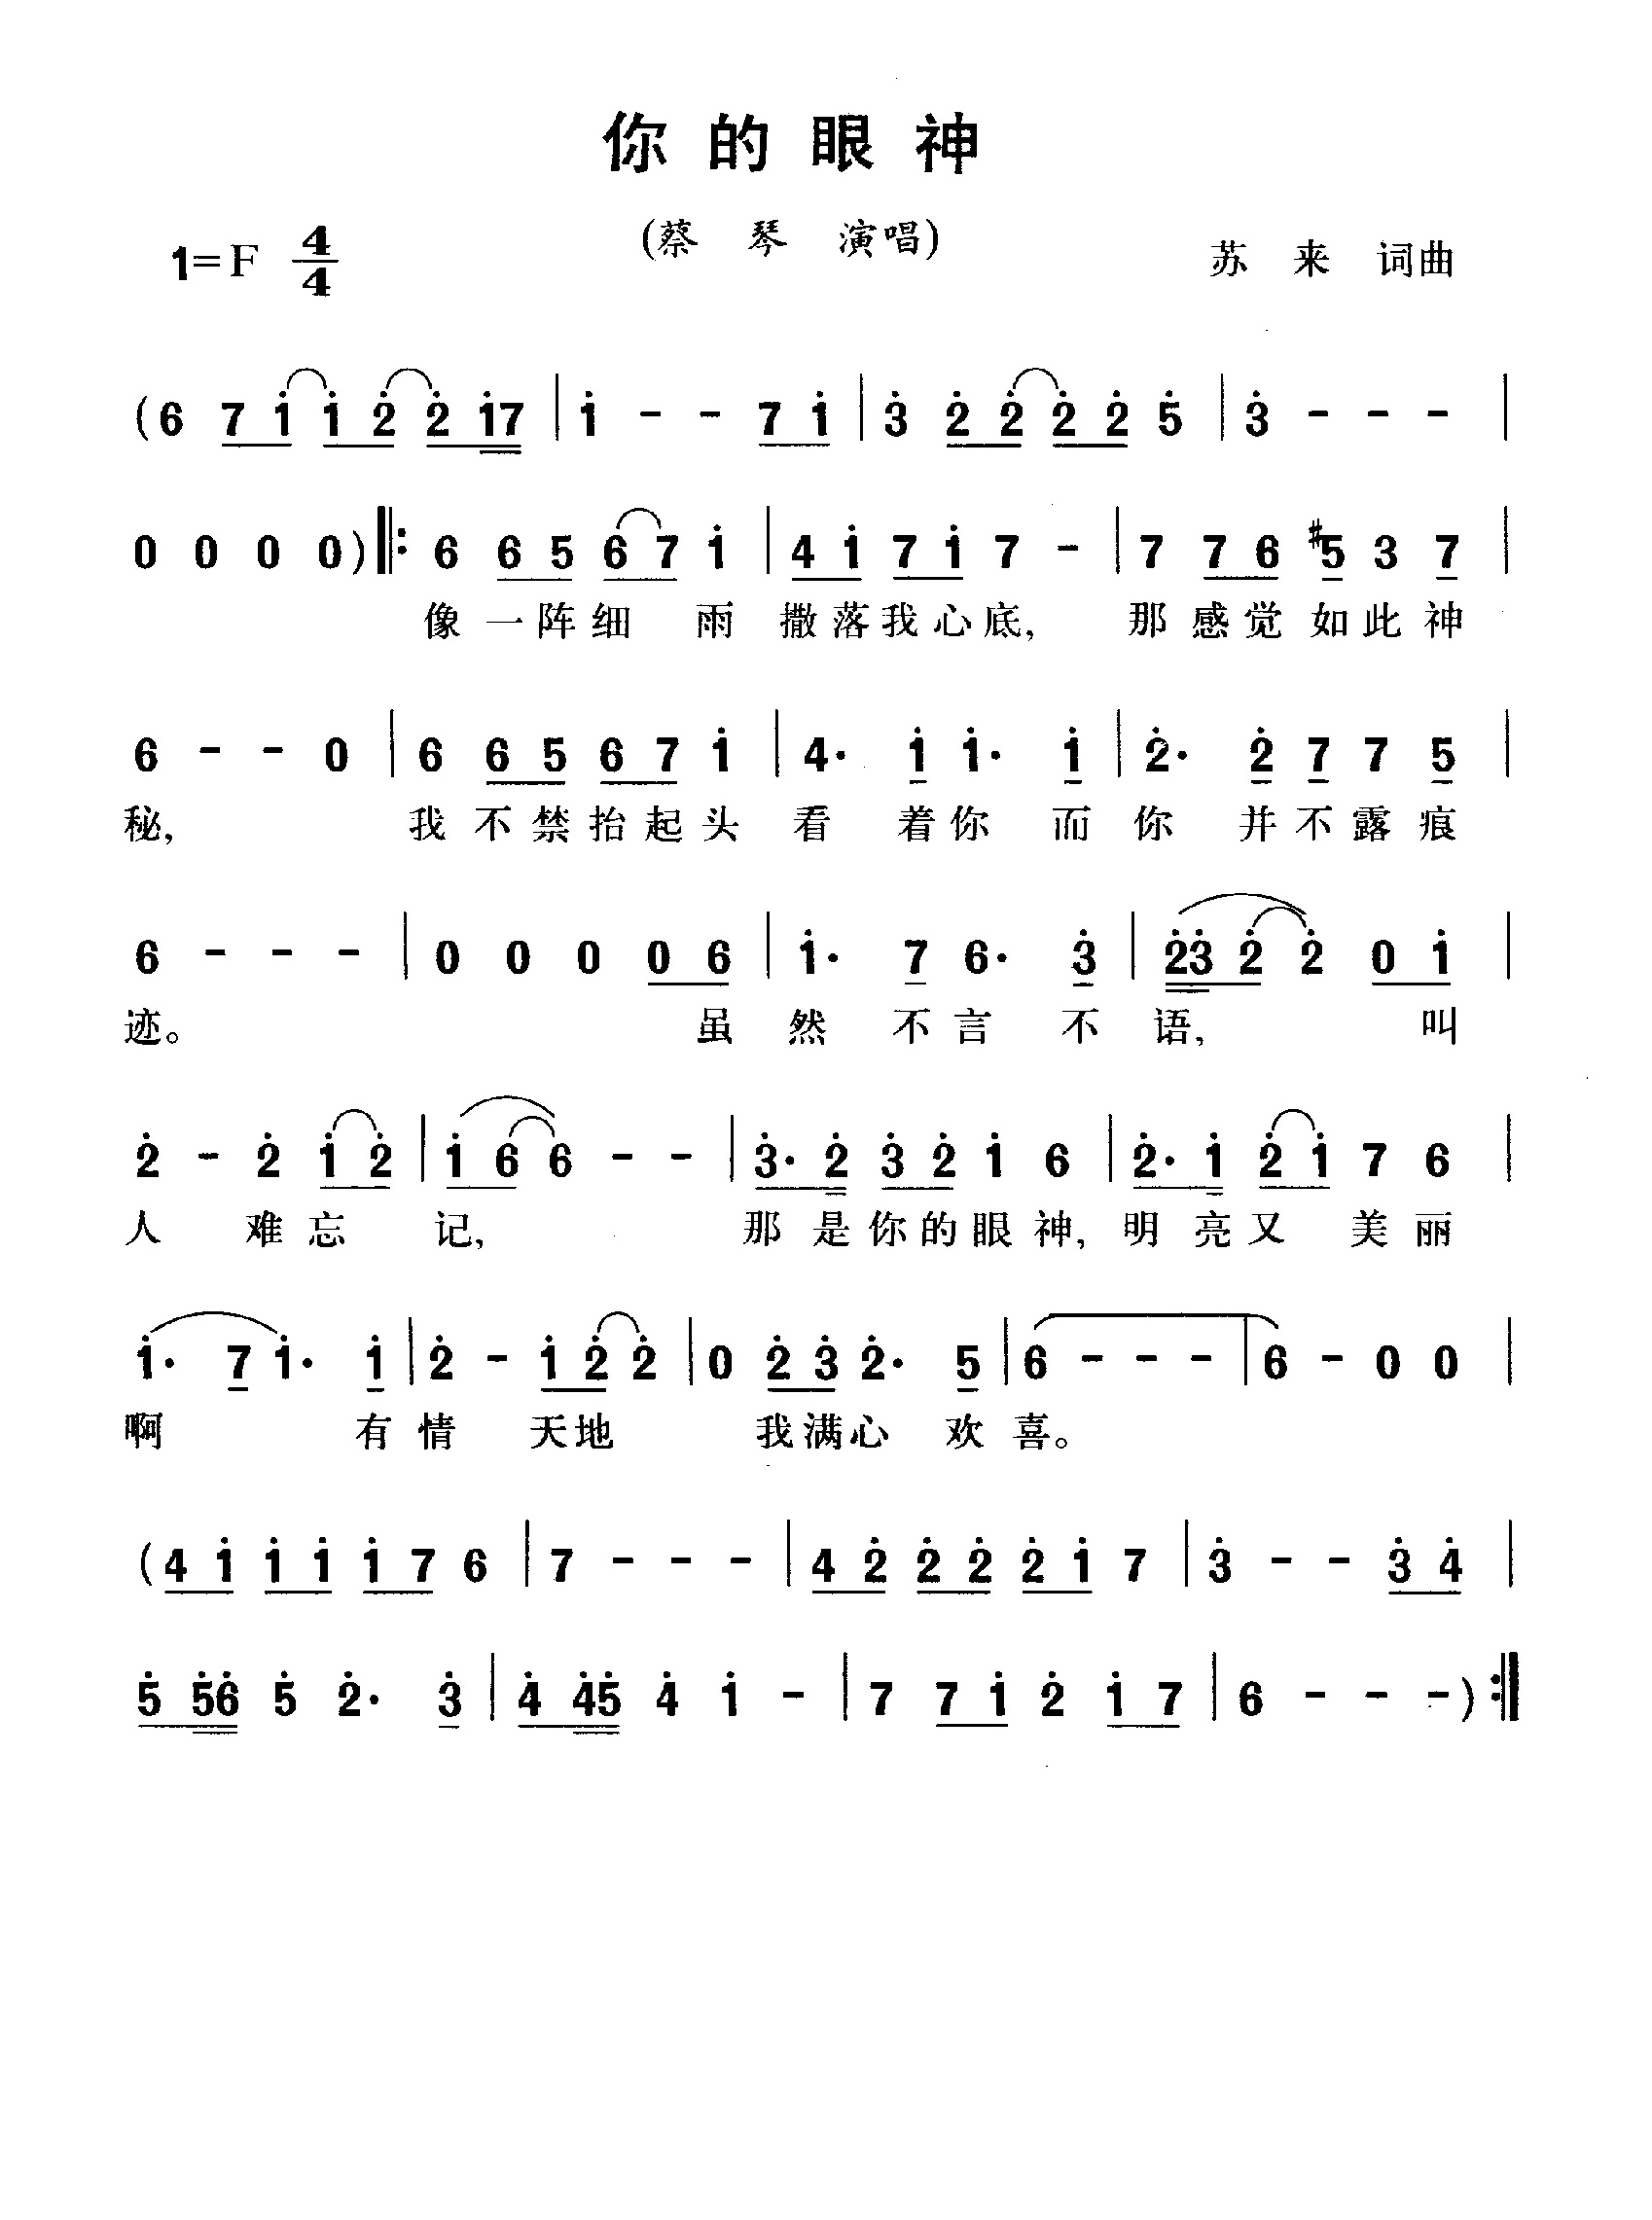 蔡琴歌曲简谱《你的眼神》1981 苏来词曲-通俗唱法歌曲谱 - 乐器学习网